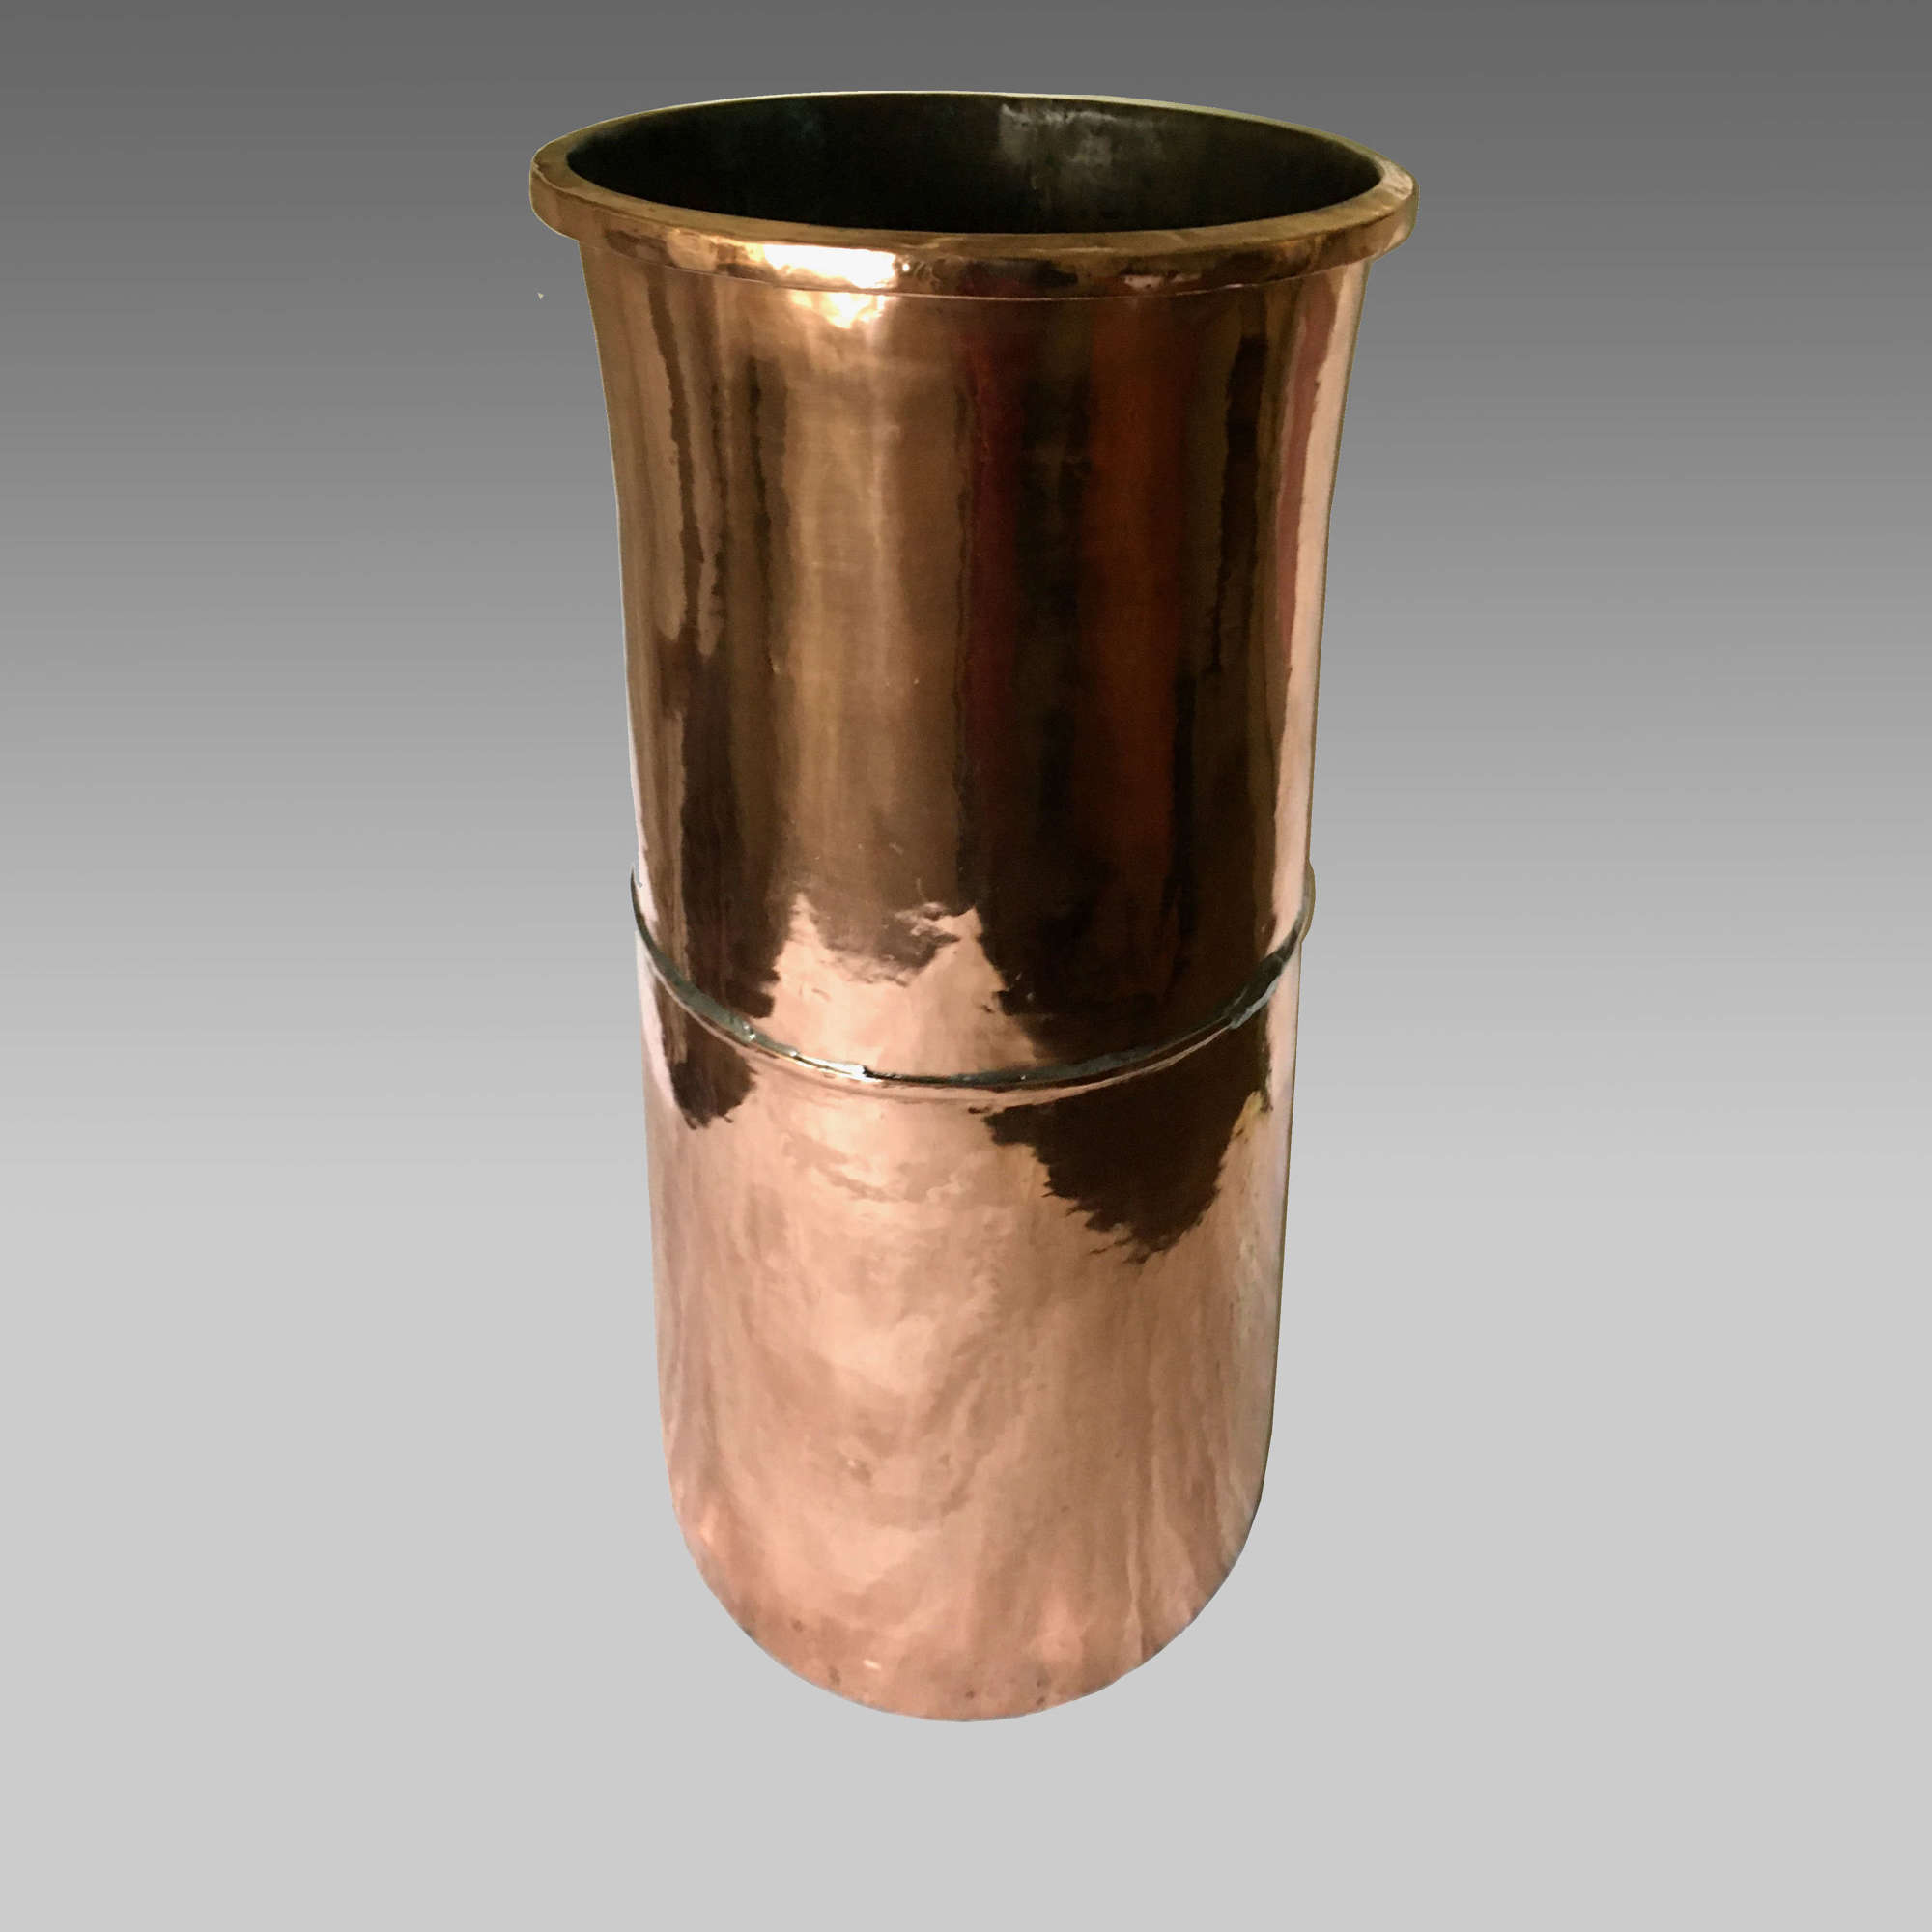 19th century tall copper pot